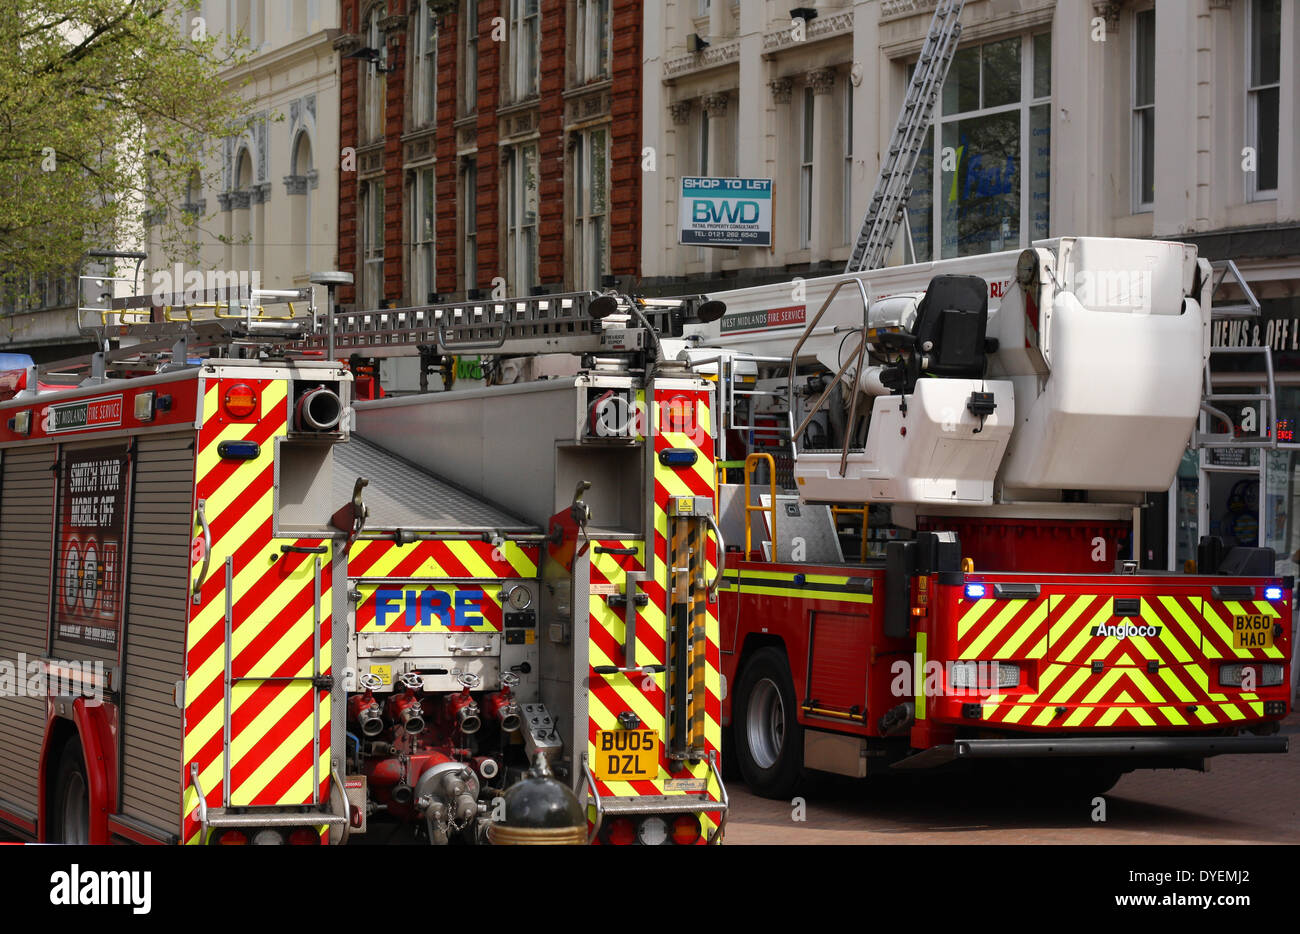 Les moteurs modernes fire sur un exercice de test, Angleterre, 2014 Banque D'Images